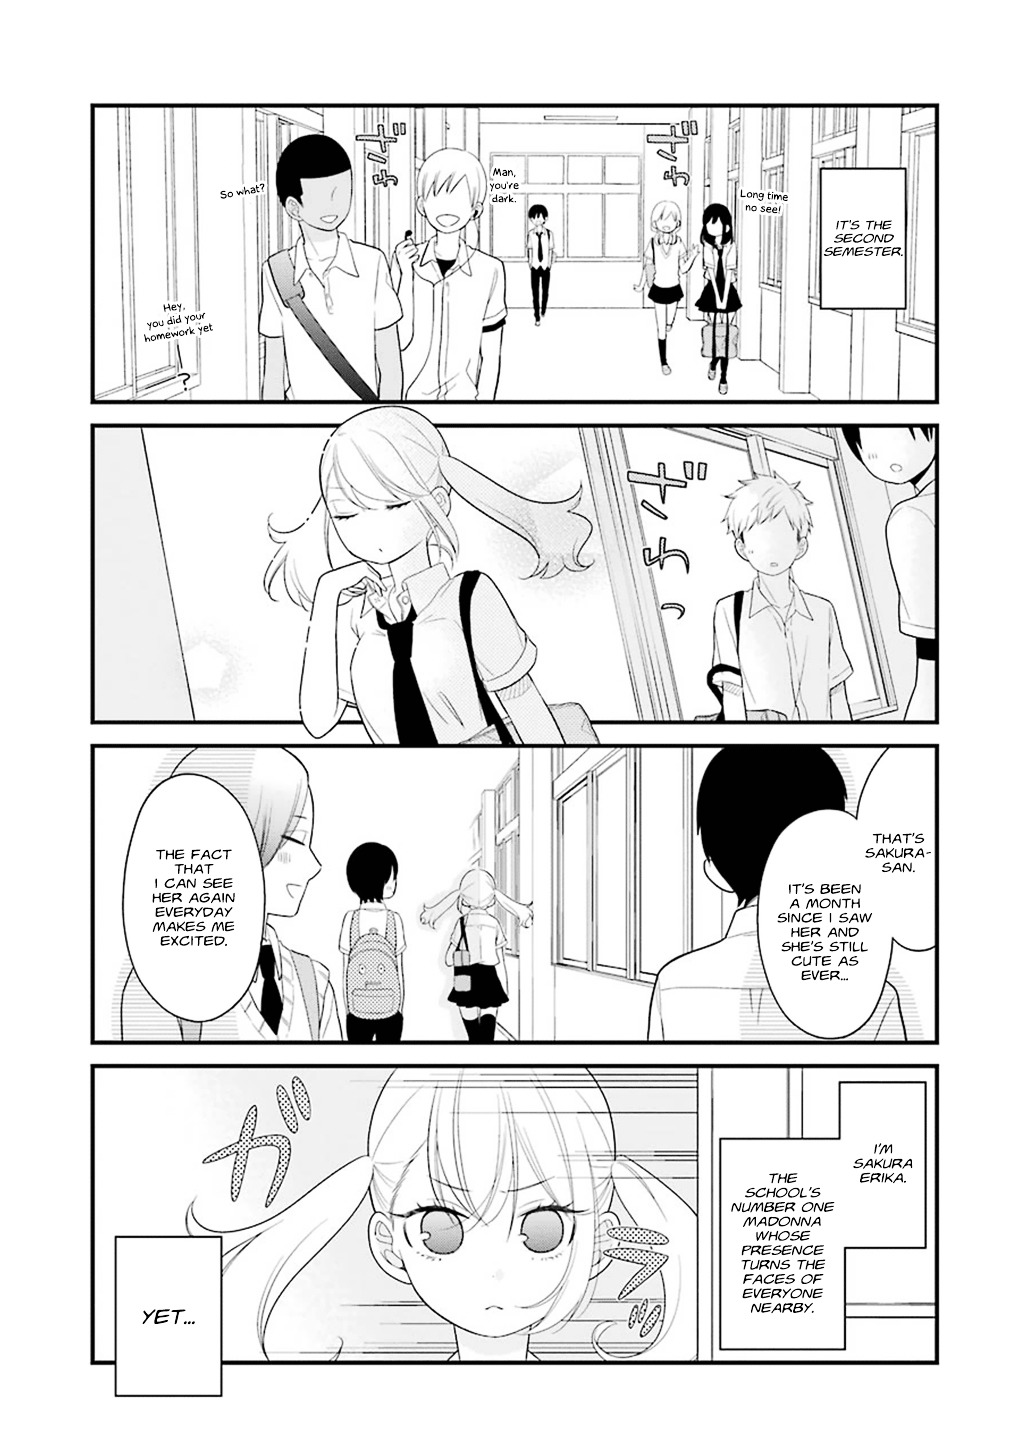 Kuzumi-Kun, Kuuki Yometemasu Ka? - Page 3